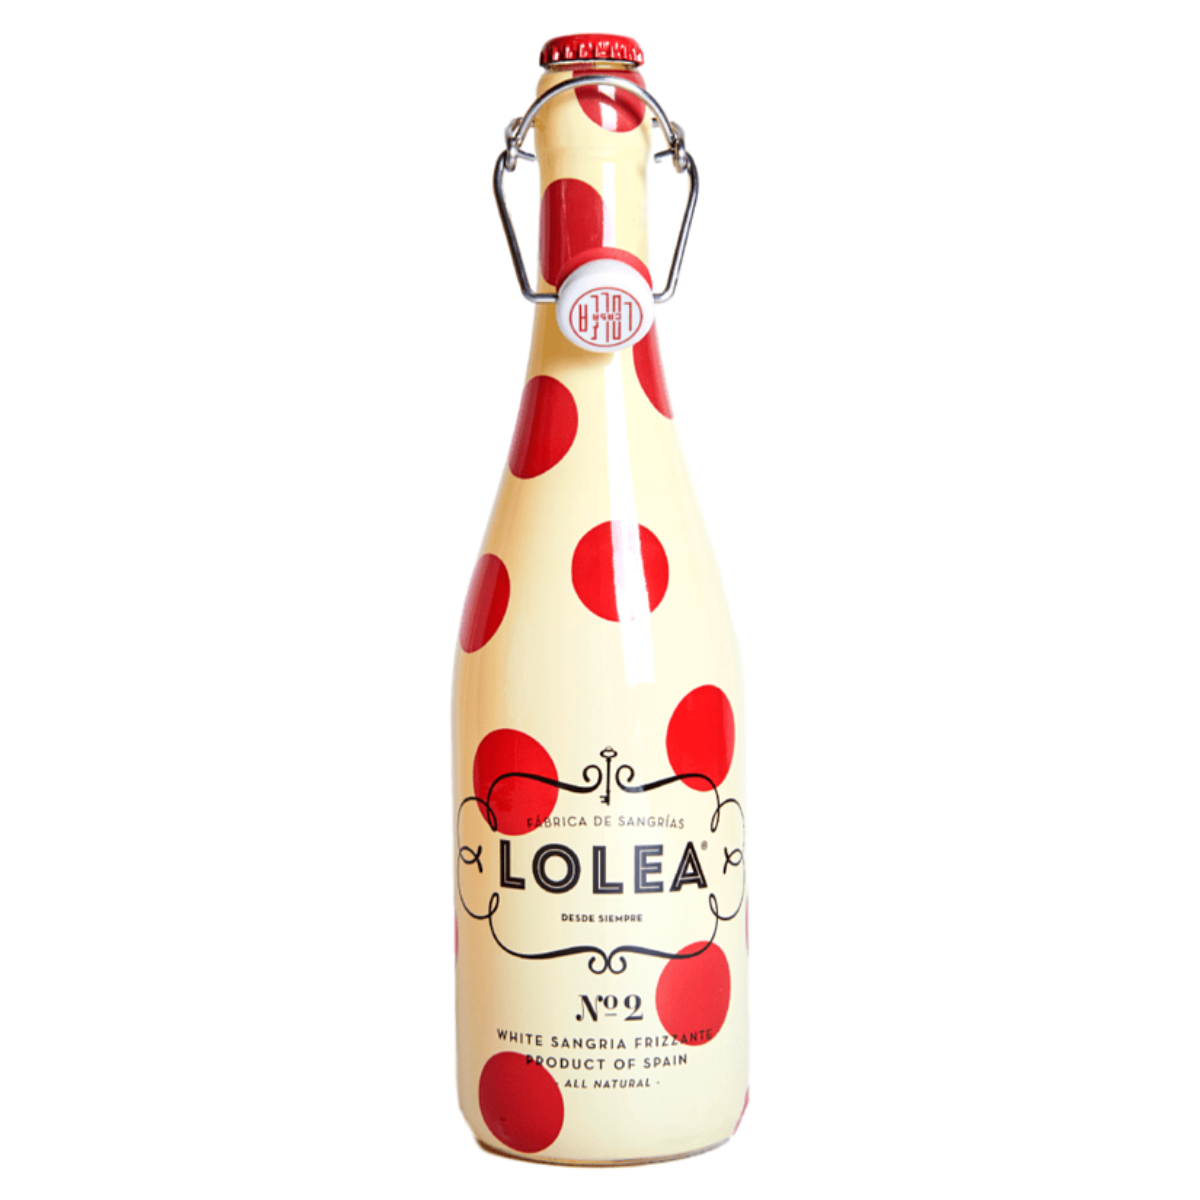 Lolea No2 Sparkling White Sangria NV 西班牙水果酒